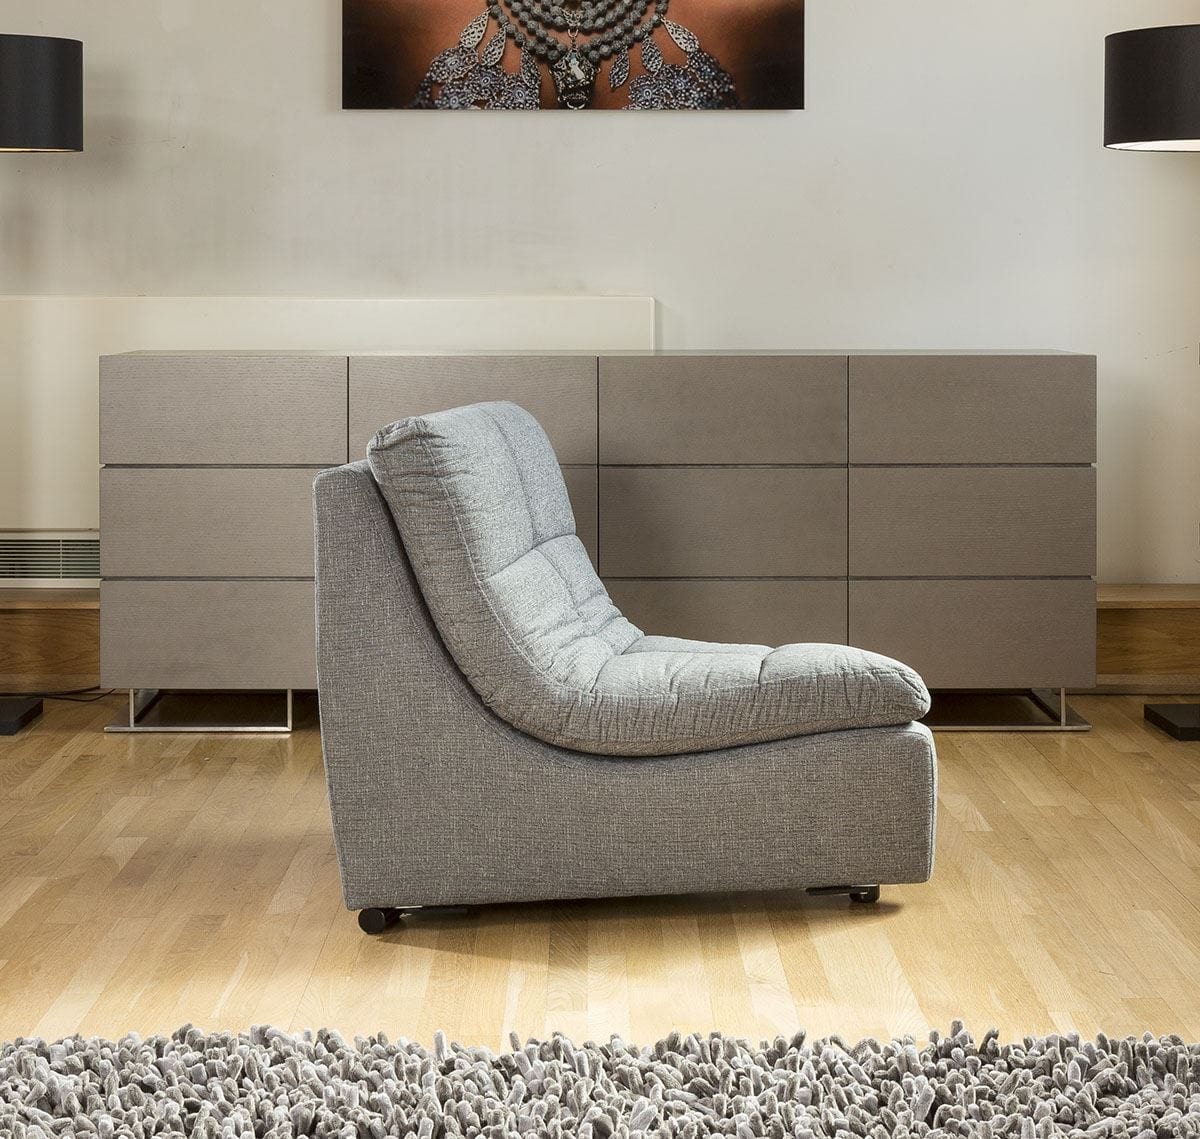 Quatropi Relax Premium Desginer Sofa Corner Piece 45 Degree Chair